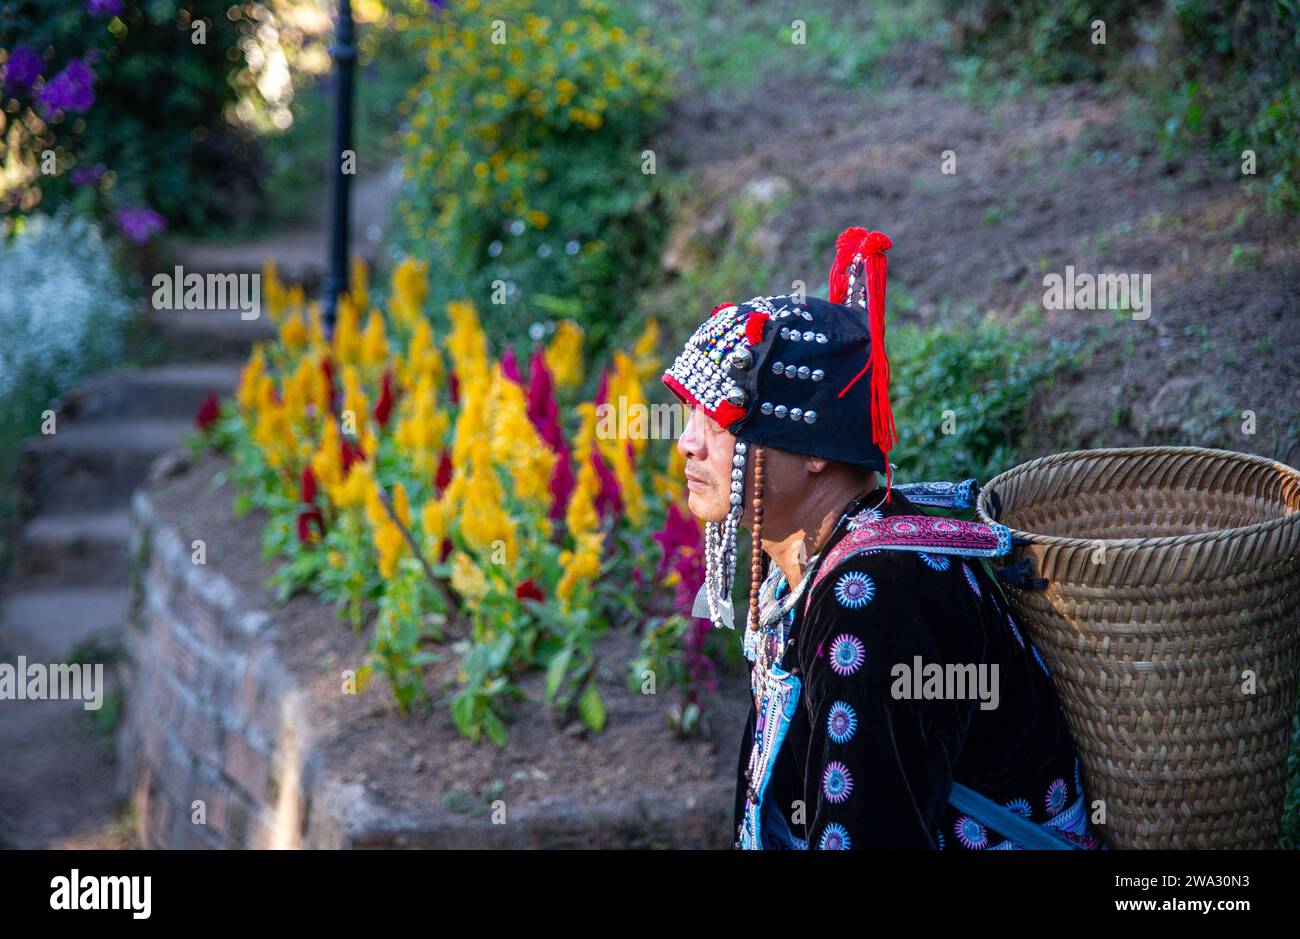 20 febbraio-2023-Chiang Rai- Thailandia- Vecchio con cesto sulla schiena e vestito con costumi tradizionali. Sullo sfondo ci sono fiori colorati Foto Stock